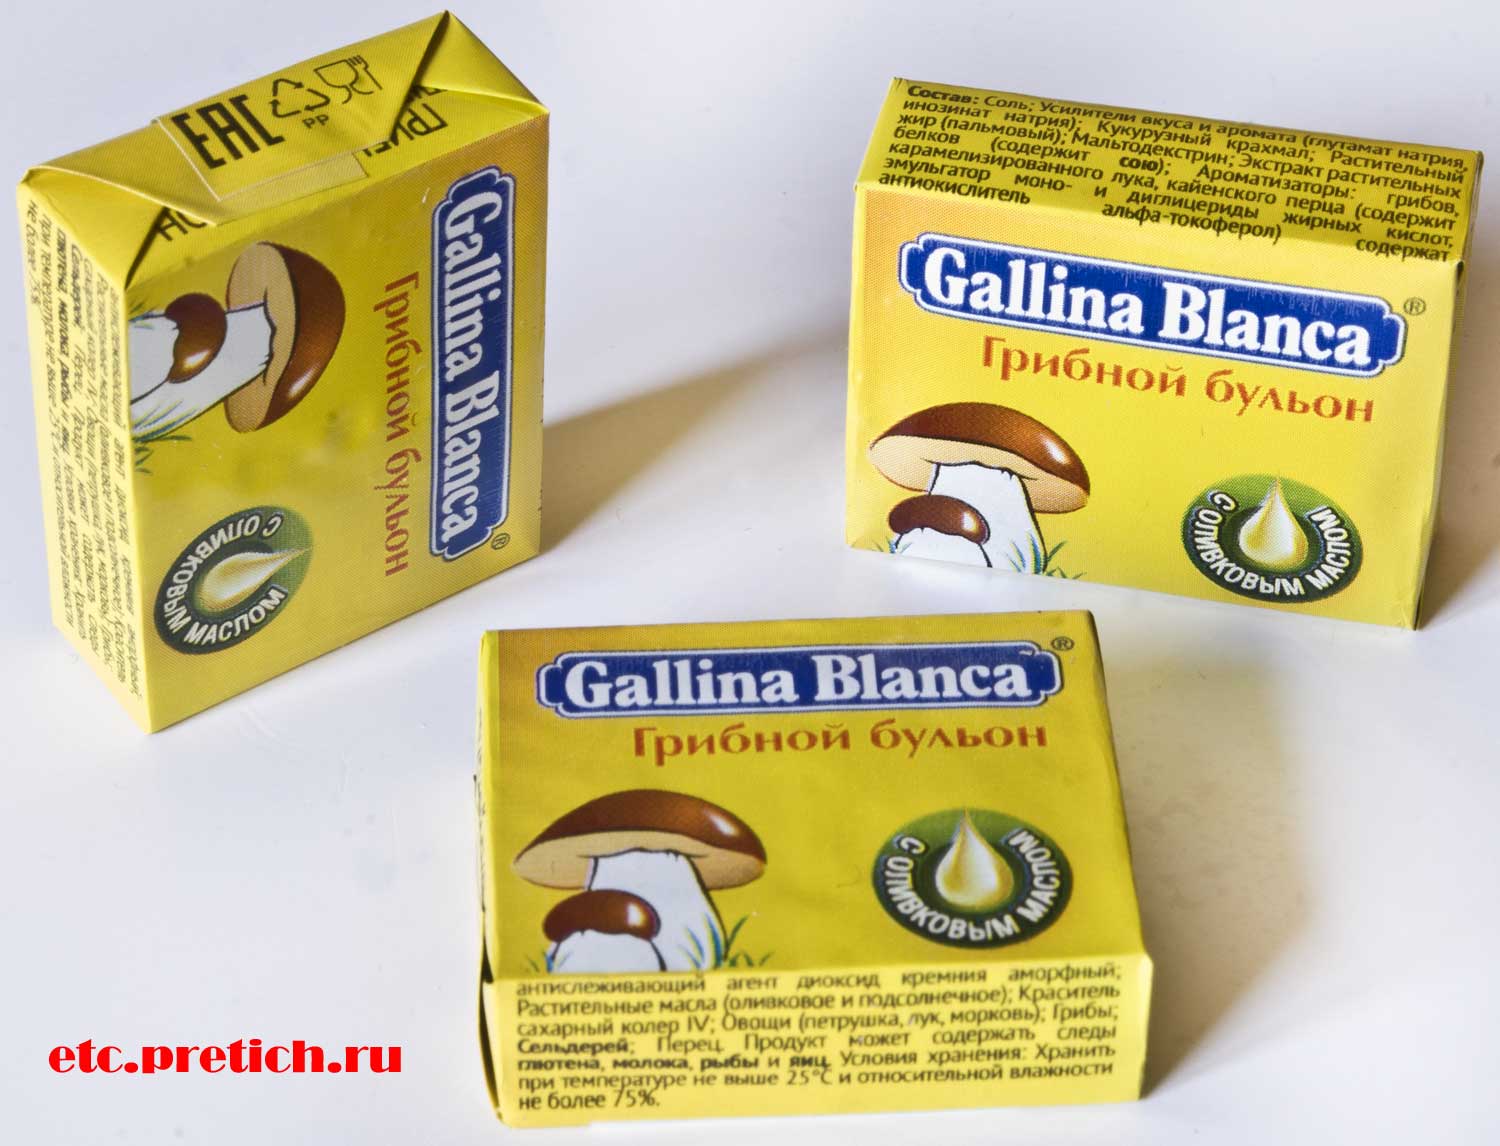 Отзыв на кубики Gallina Blanca Грибной бульон полное описание, цена